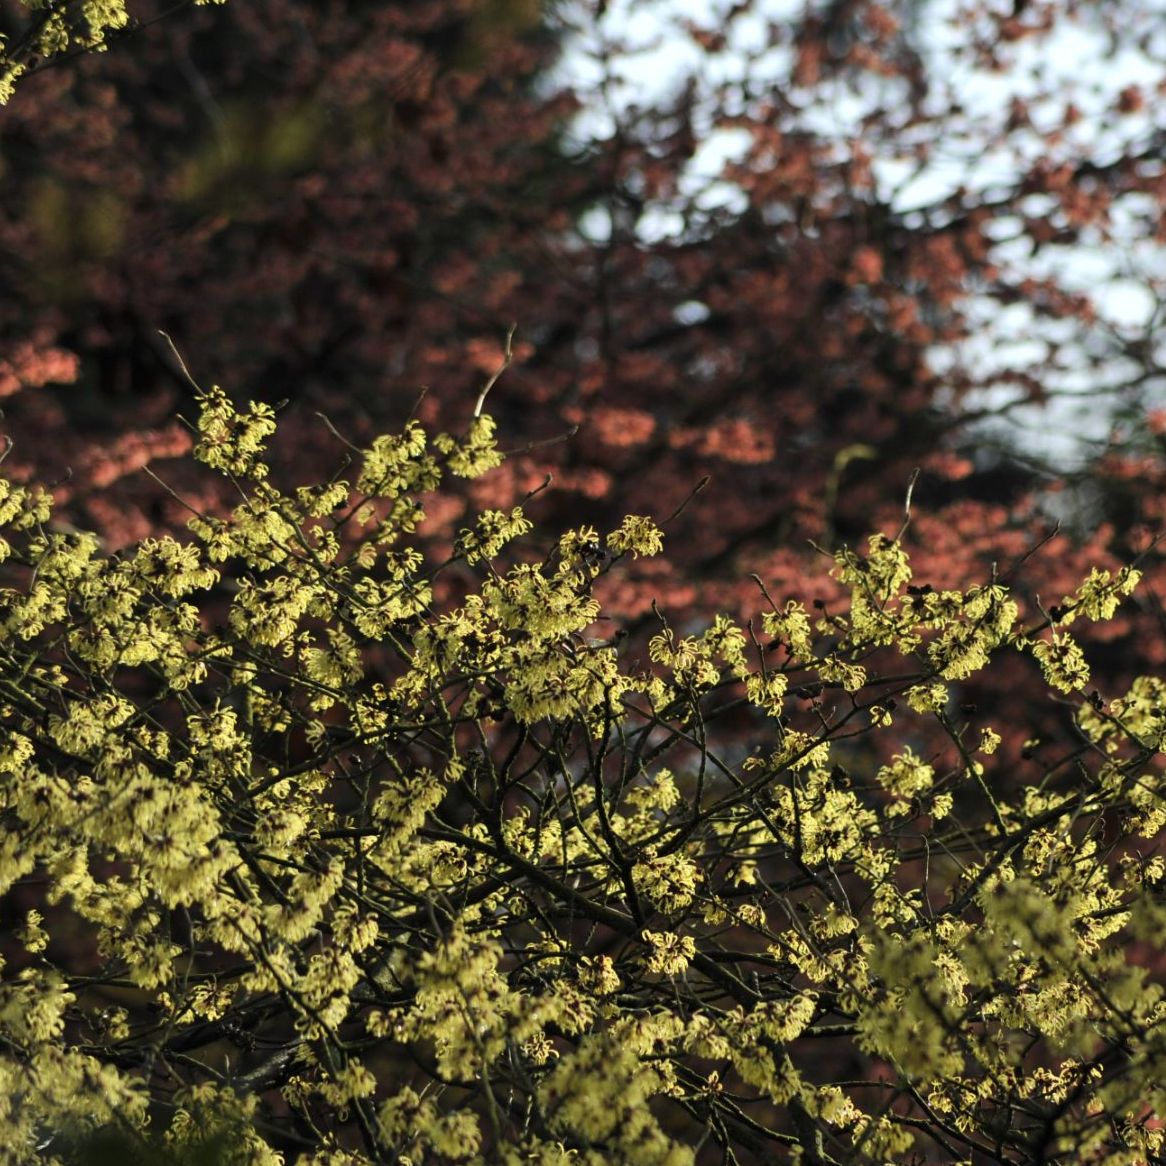 Winter in Arboretum Kalmthout. De toverhazelaars, Hamamelis, staan in bloei, gele en zalmroze bloemen contrasteren met de kale takken.